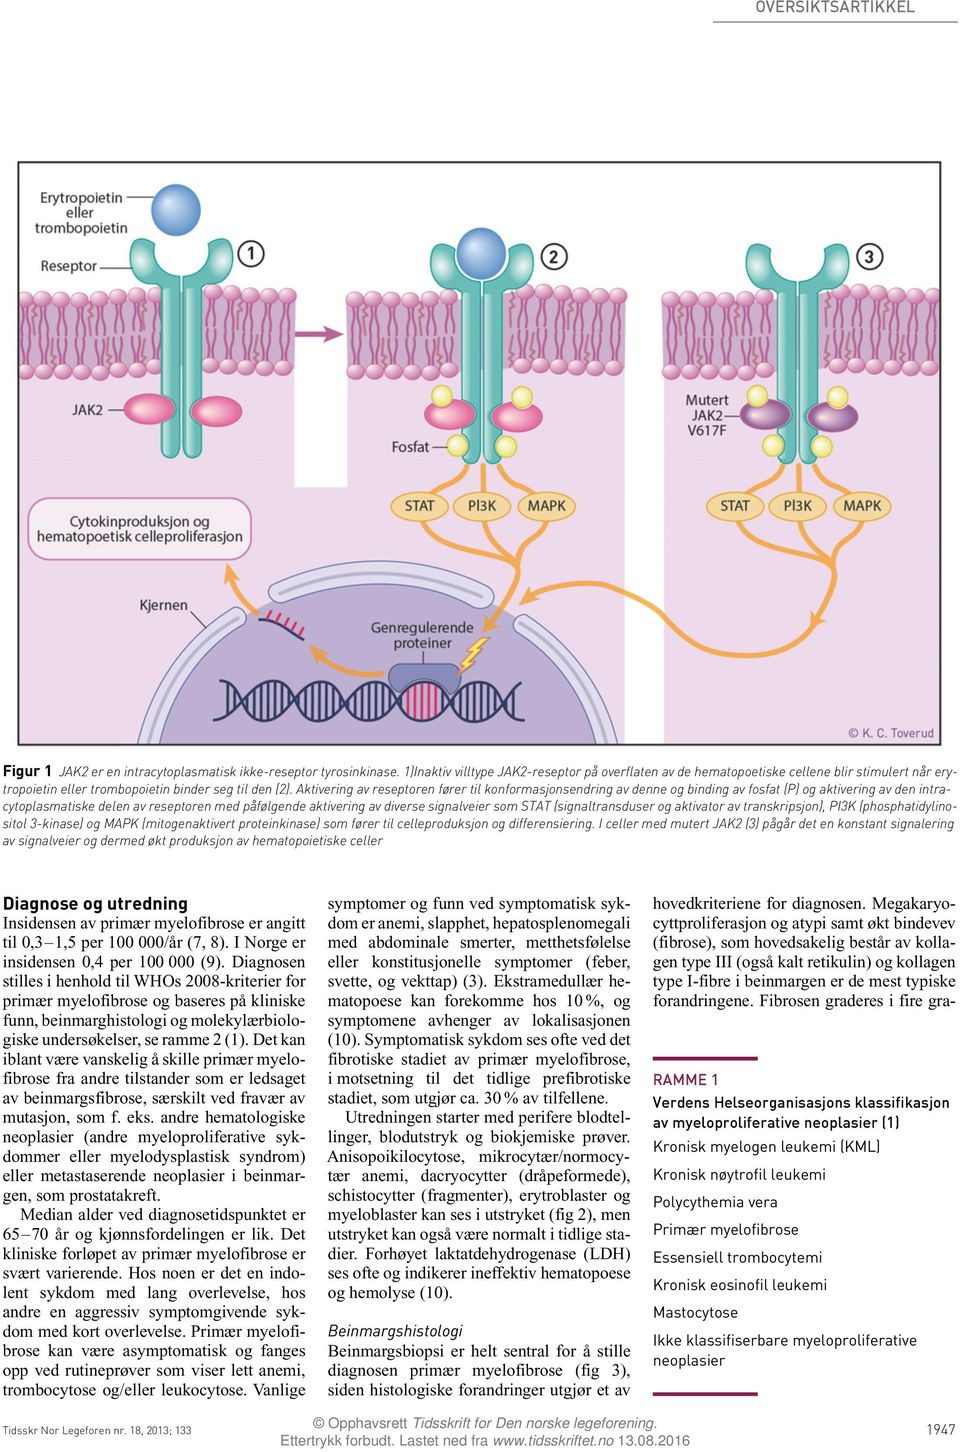 Aktivering av reseptoren fører til konformasjonsendring av denne binding av fosfat (P) aktivering av den intracytoplasmatiske delen av reseptoren med påfølgende aktivering av diverse signalveier som